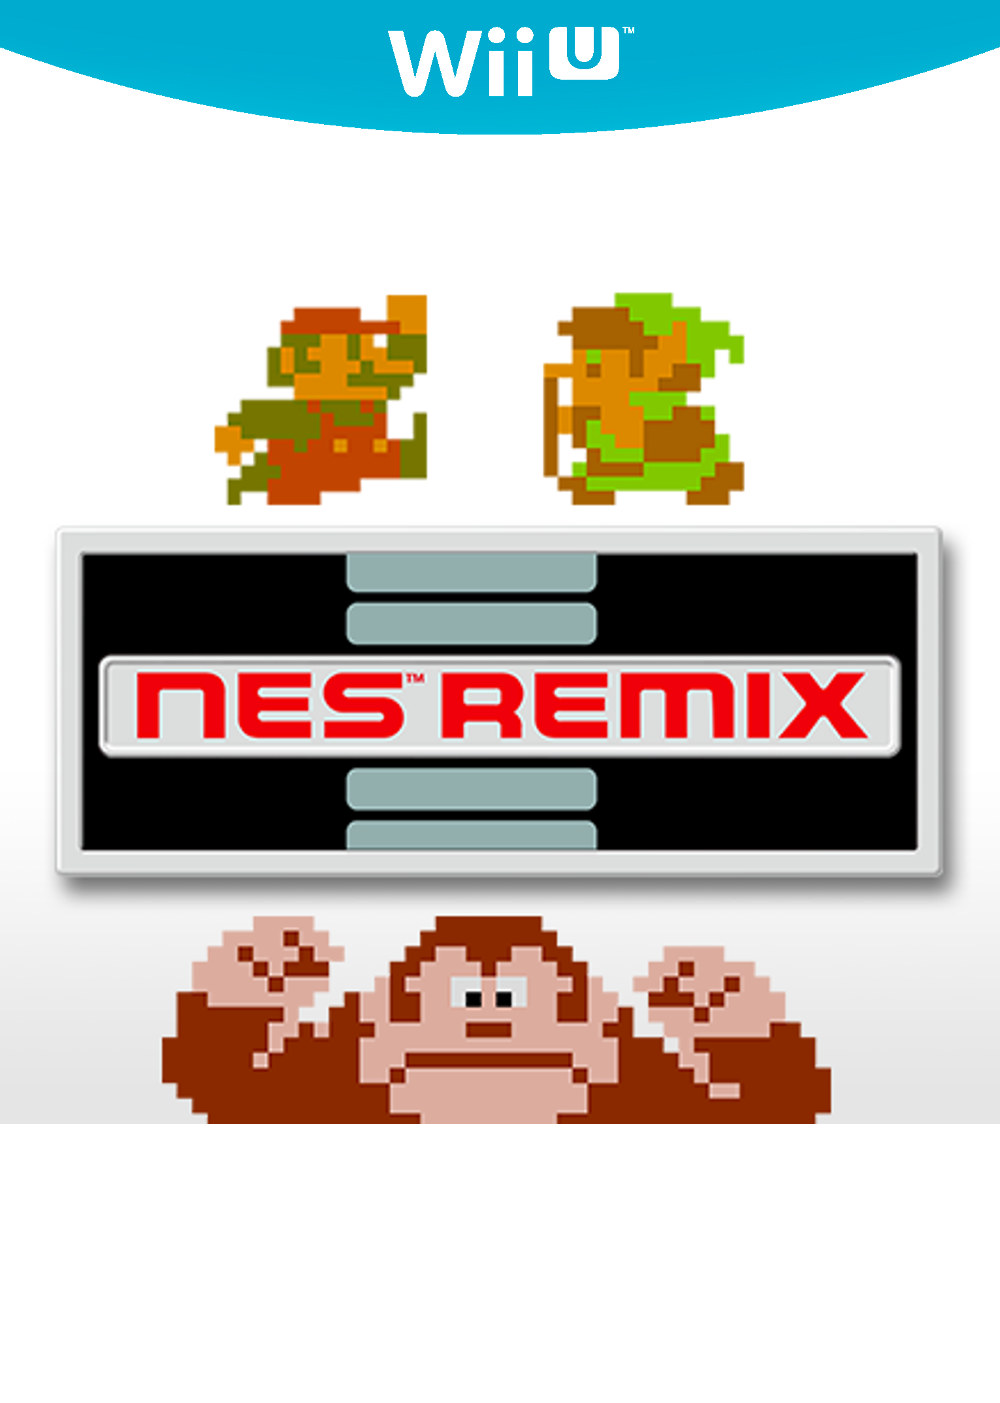 NES Remix Cover